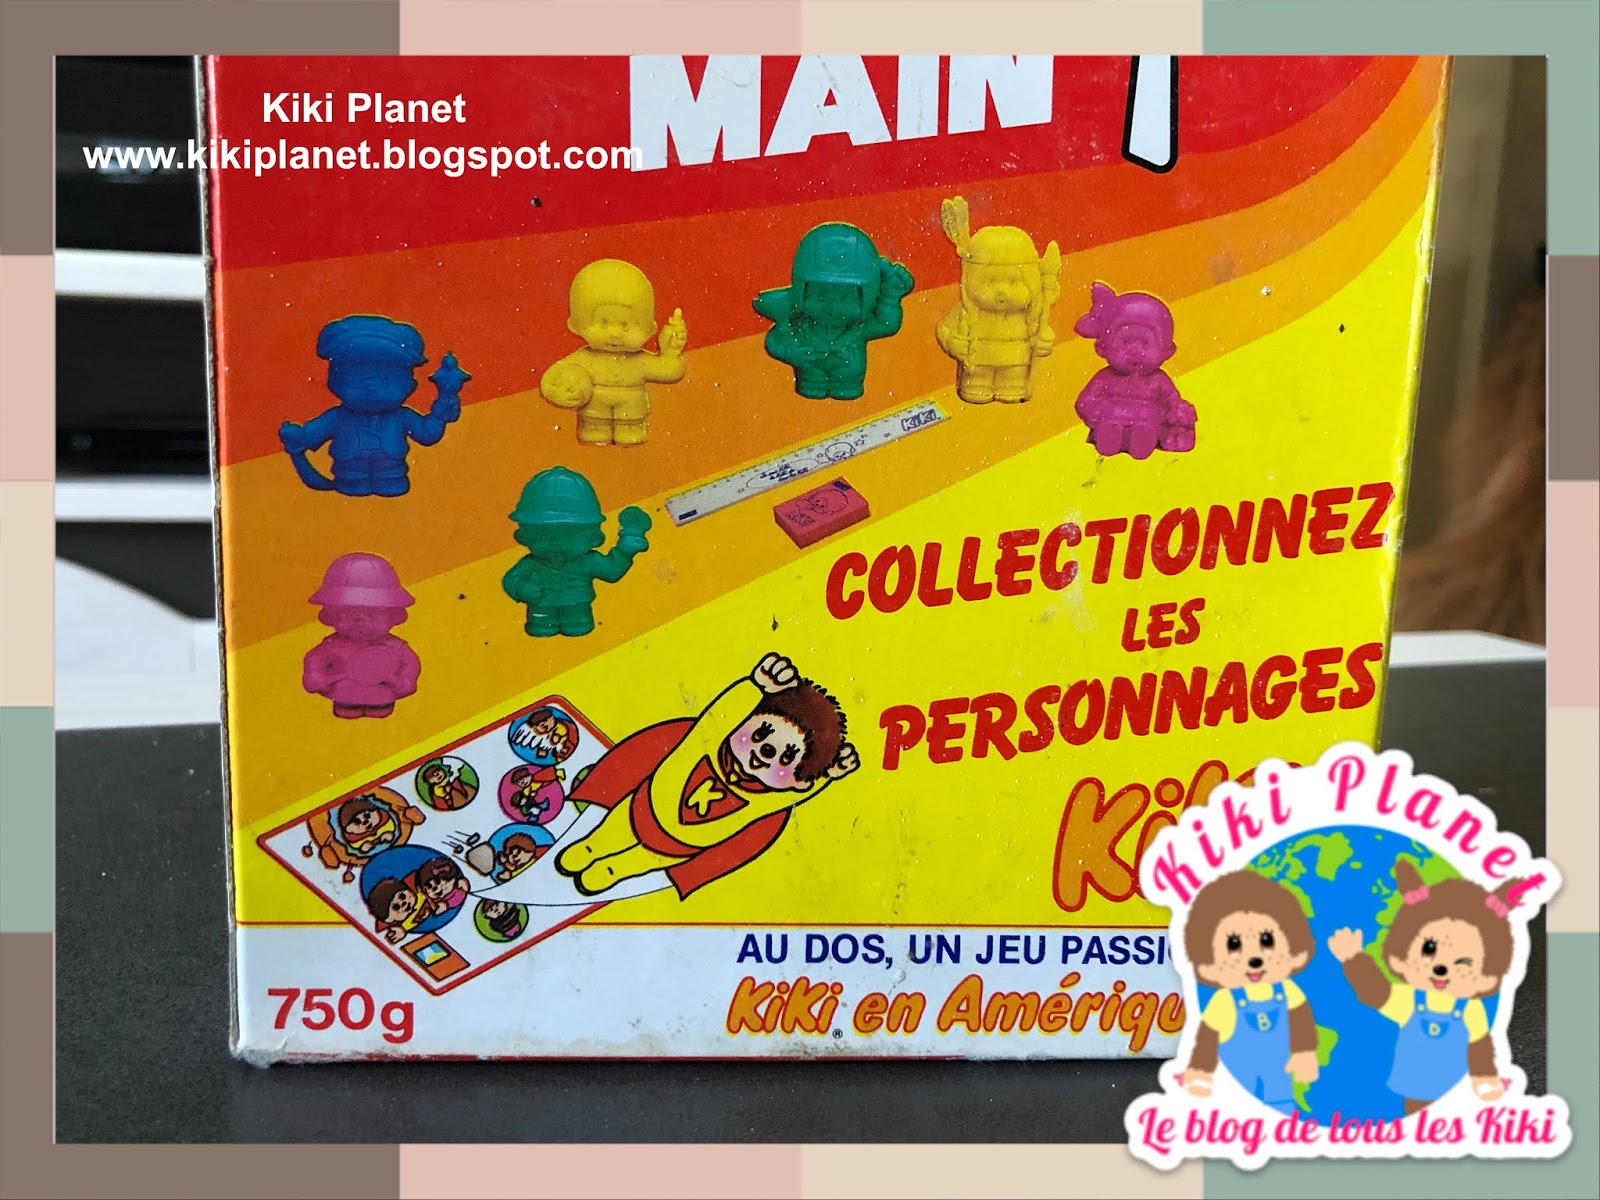 Kiki Planet: 📦 Unboxing de la boite de lessive Bonux vintage spéciale Kiki  !